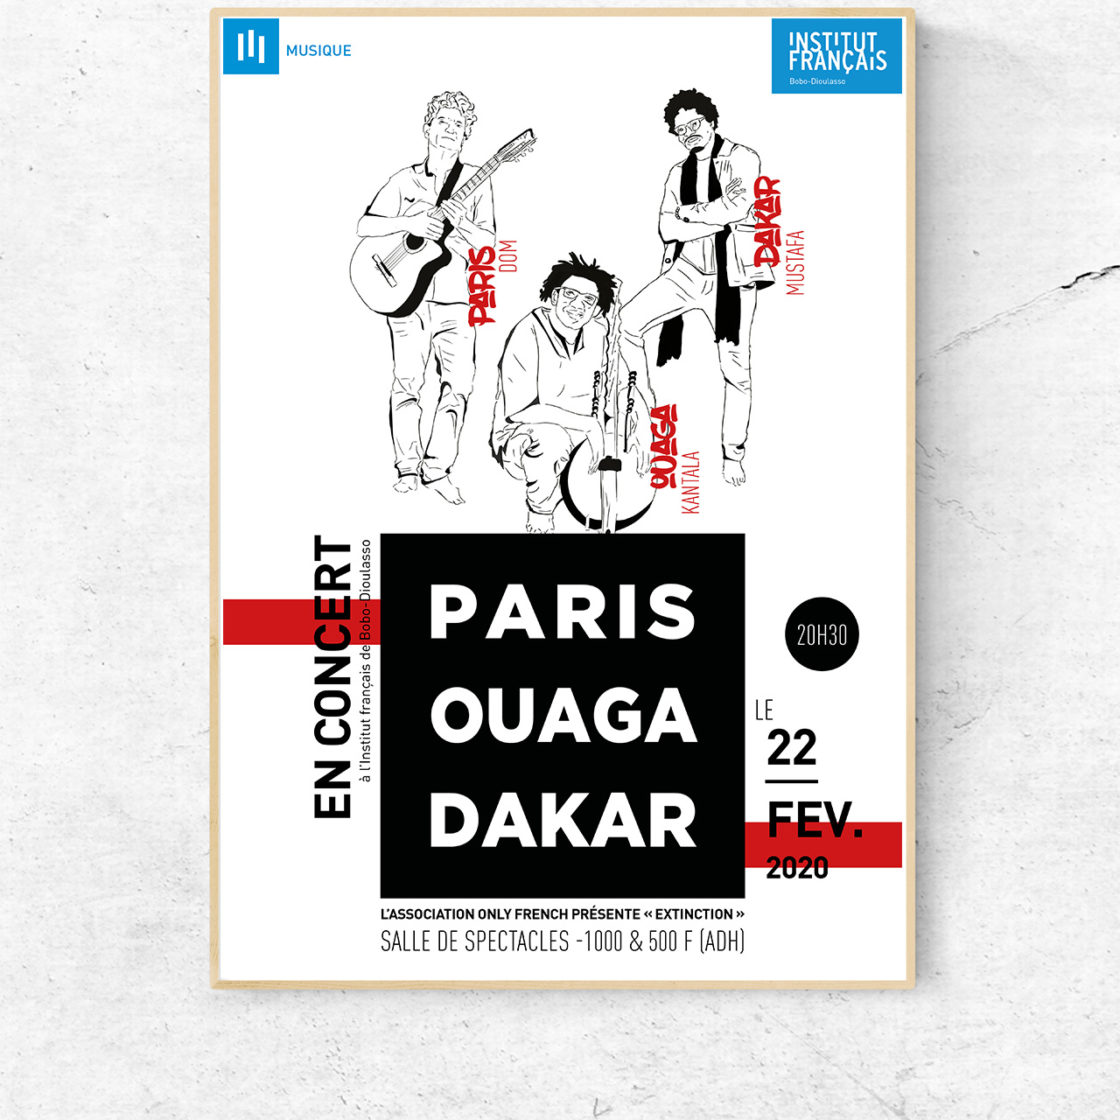 concert-paris-ouaga-dakar-institut-francais-bobo-dioulasso-2